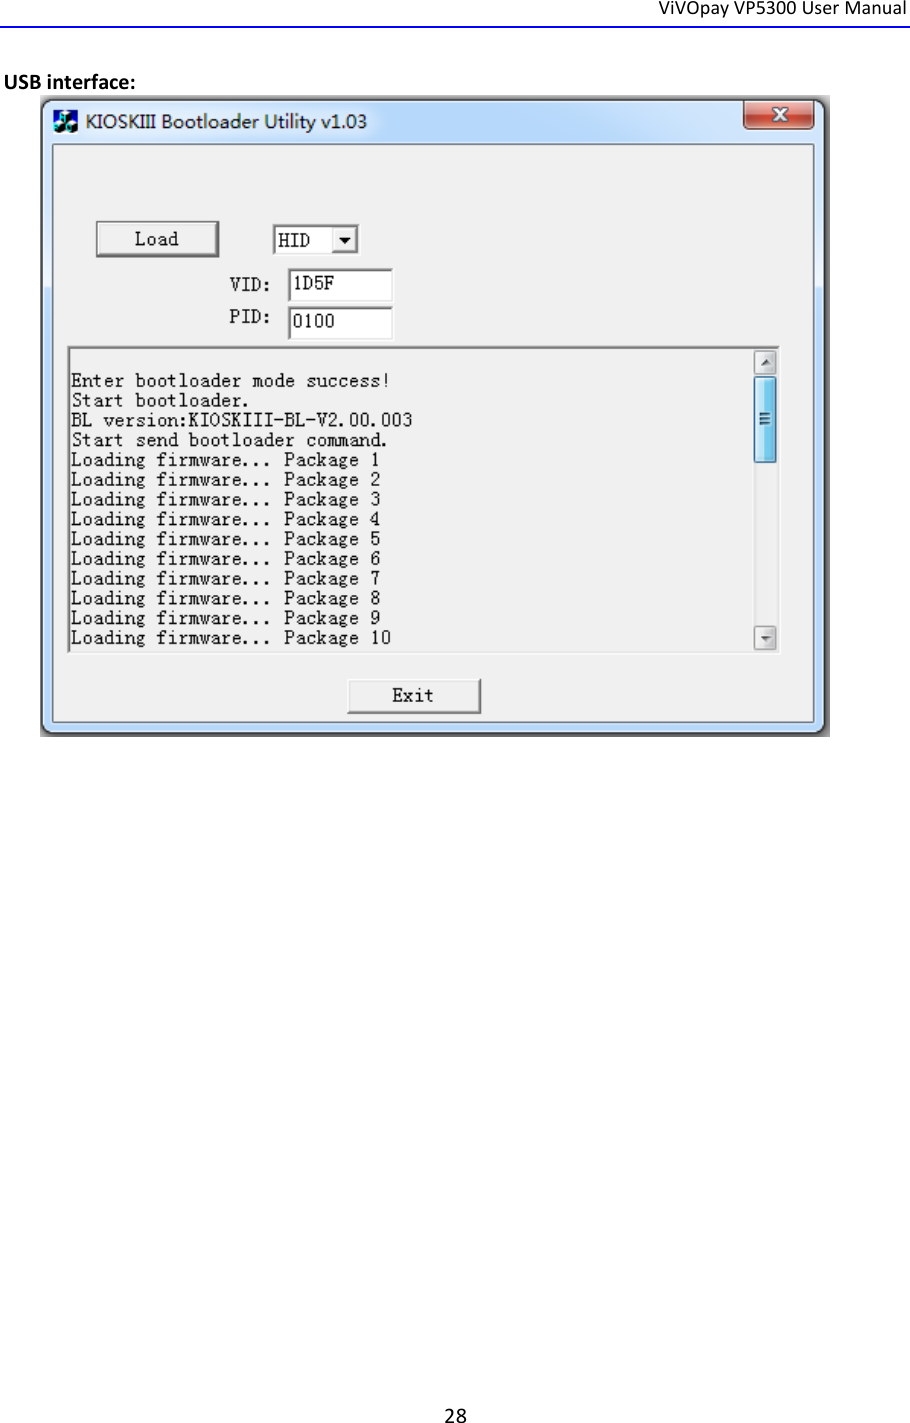  ViVOpay VP5300 User Manual   28  USB interface:  